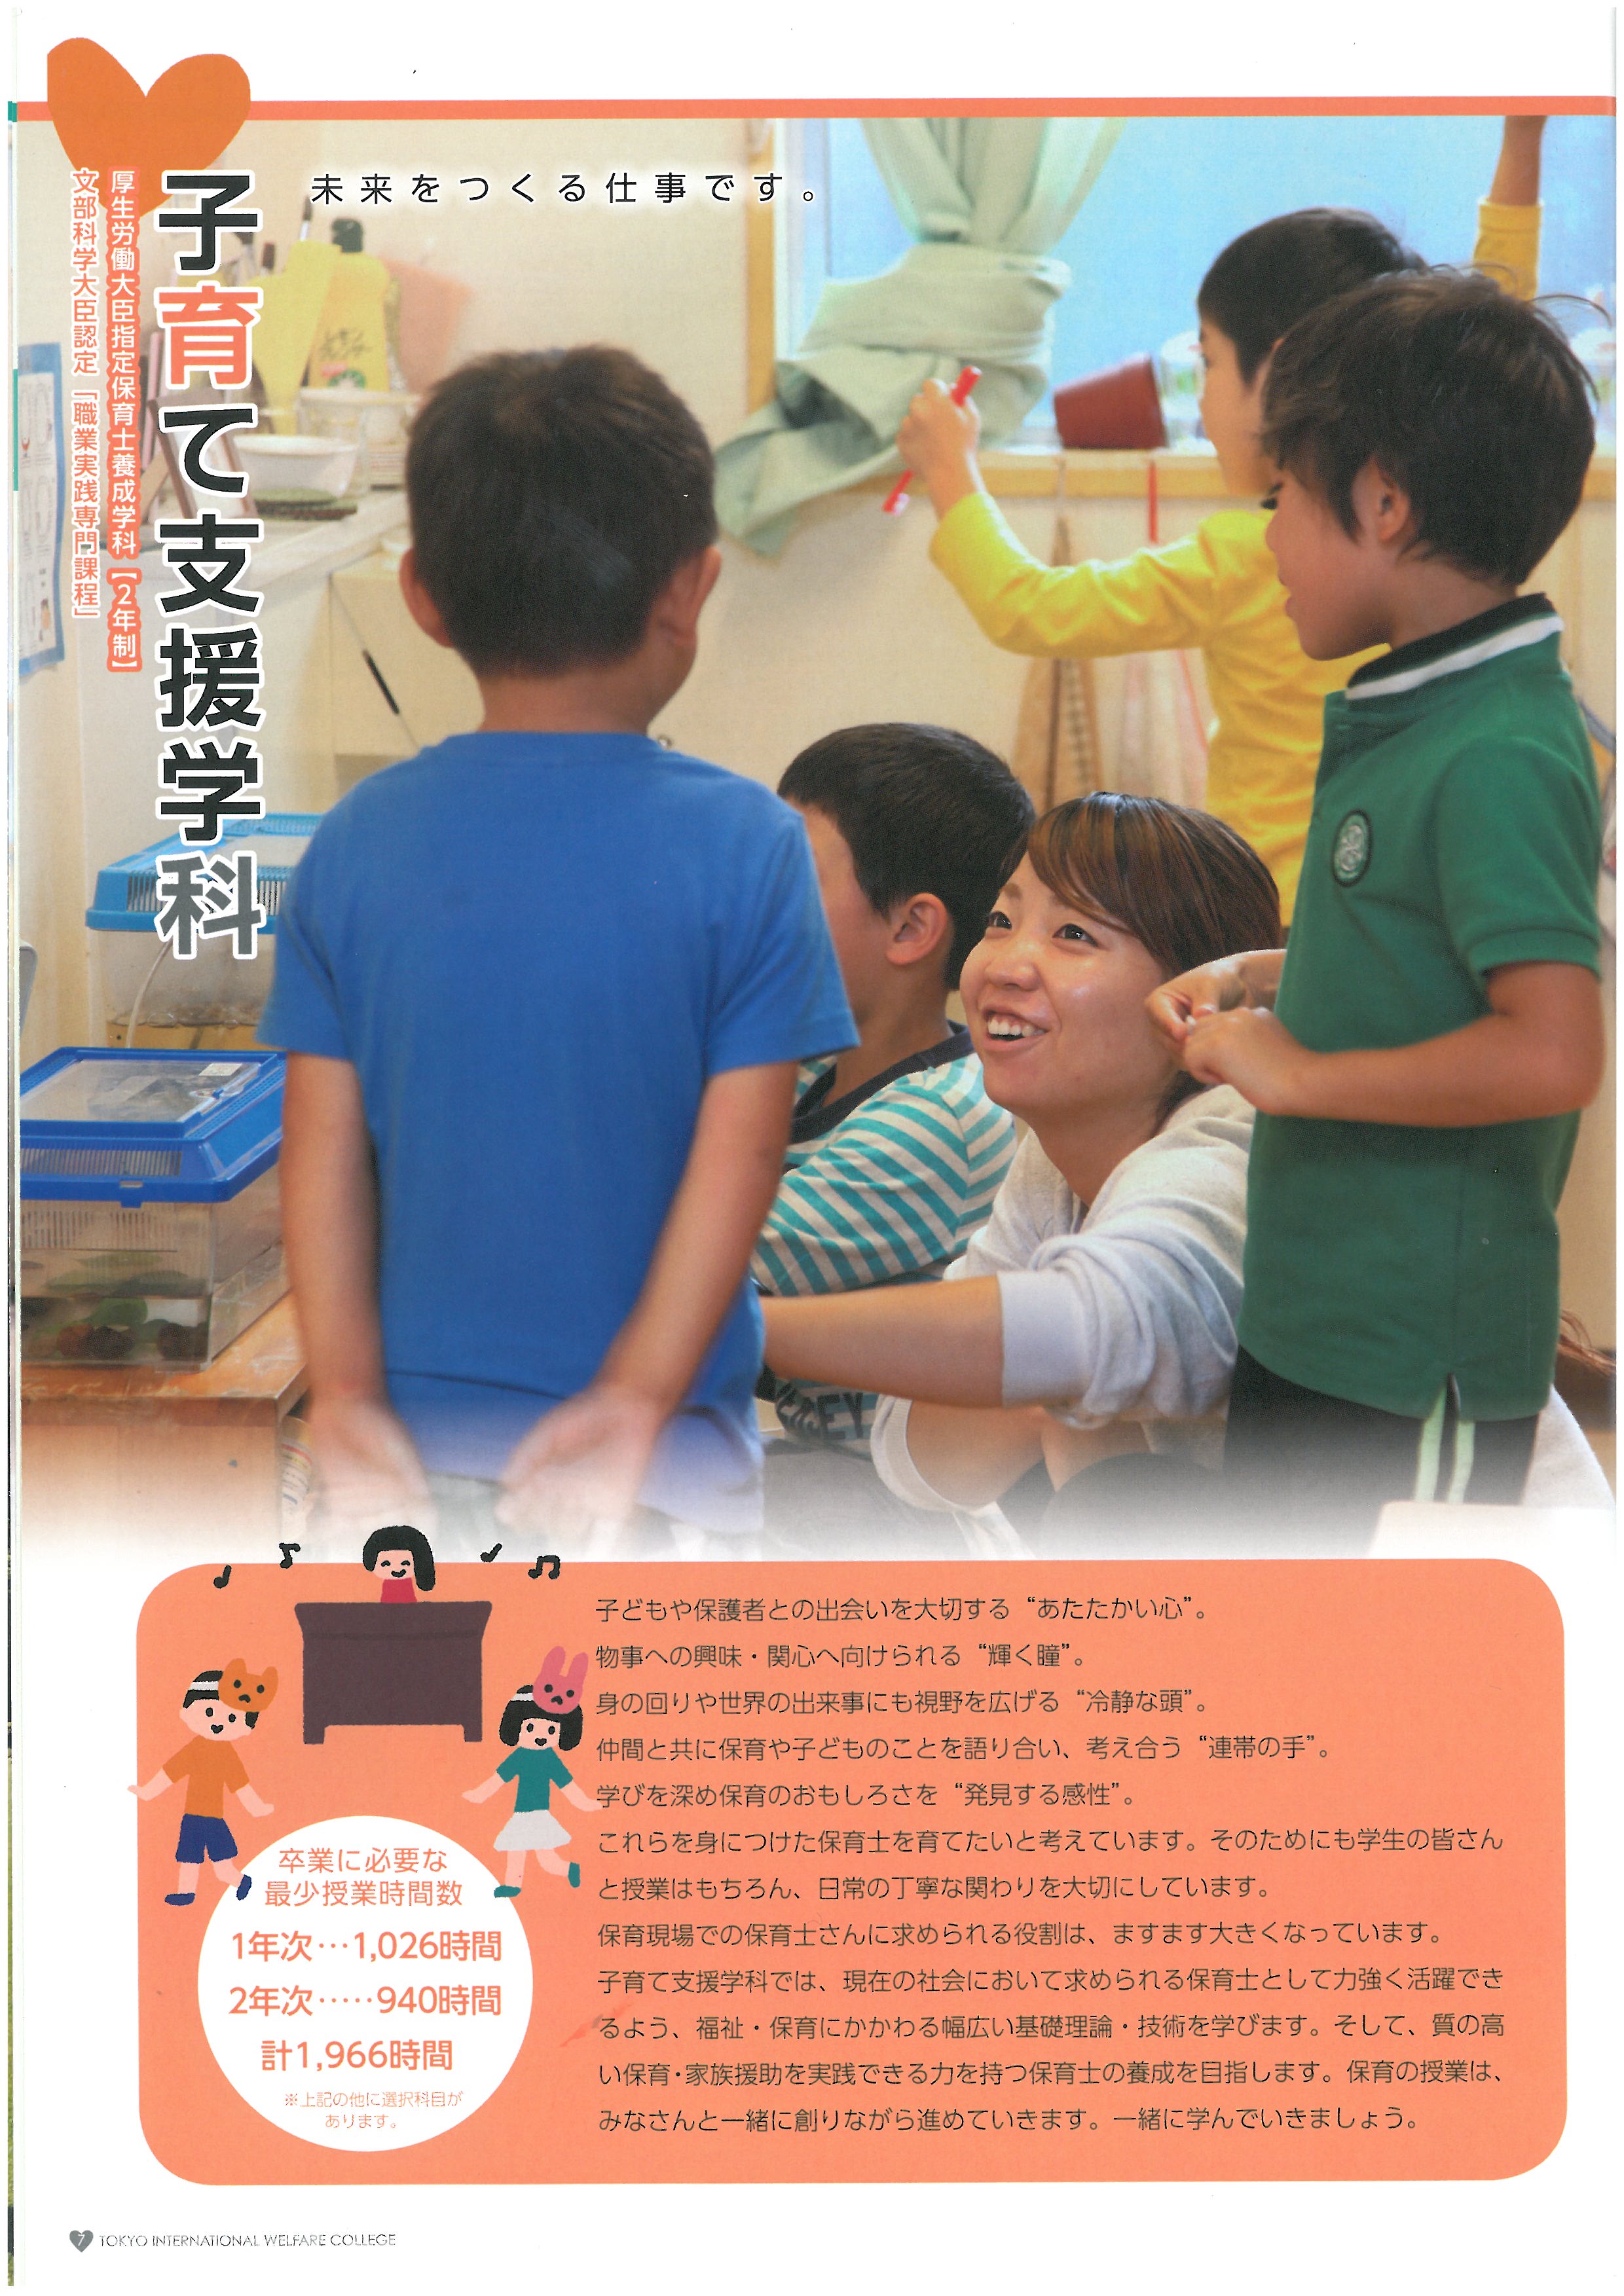 도쿄 국제복지전문학교 홍보 팜플렛 08.jpg